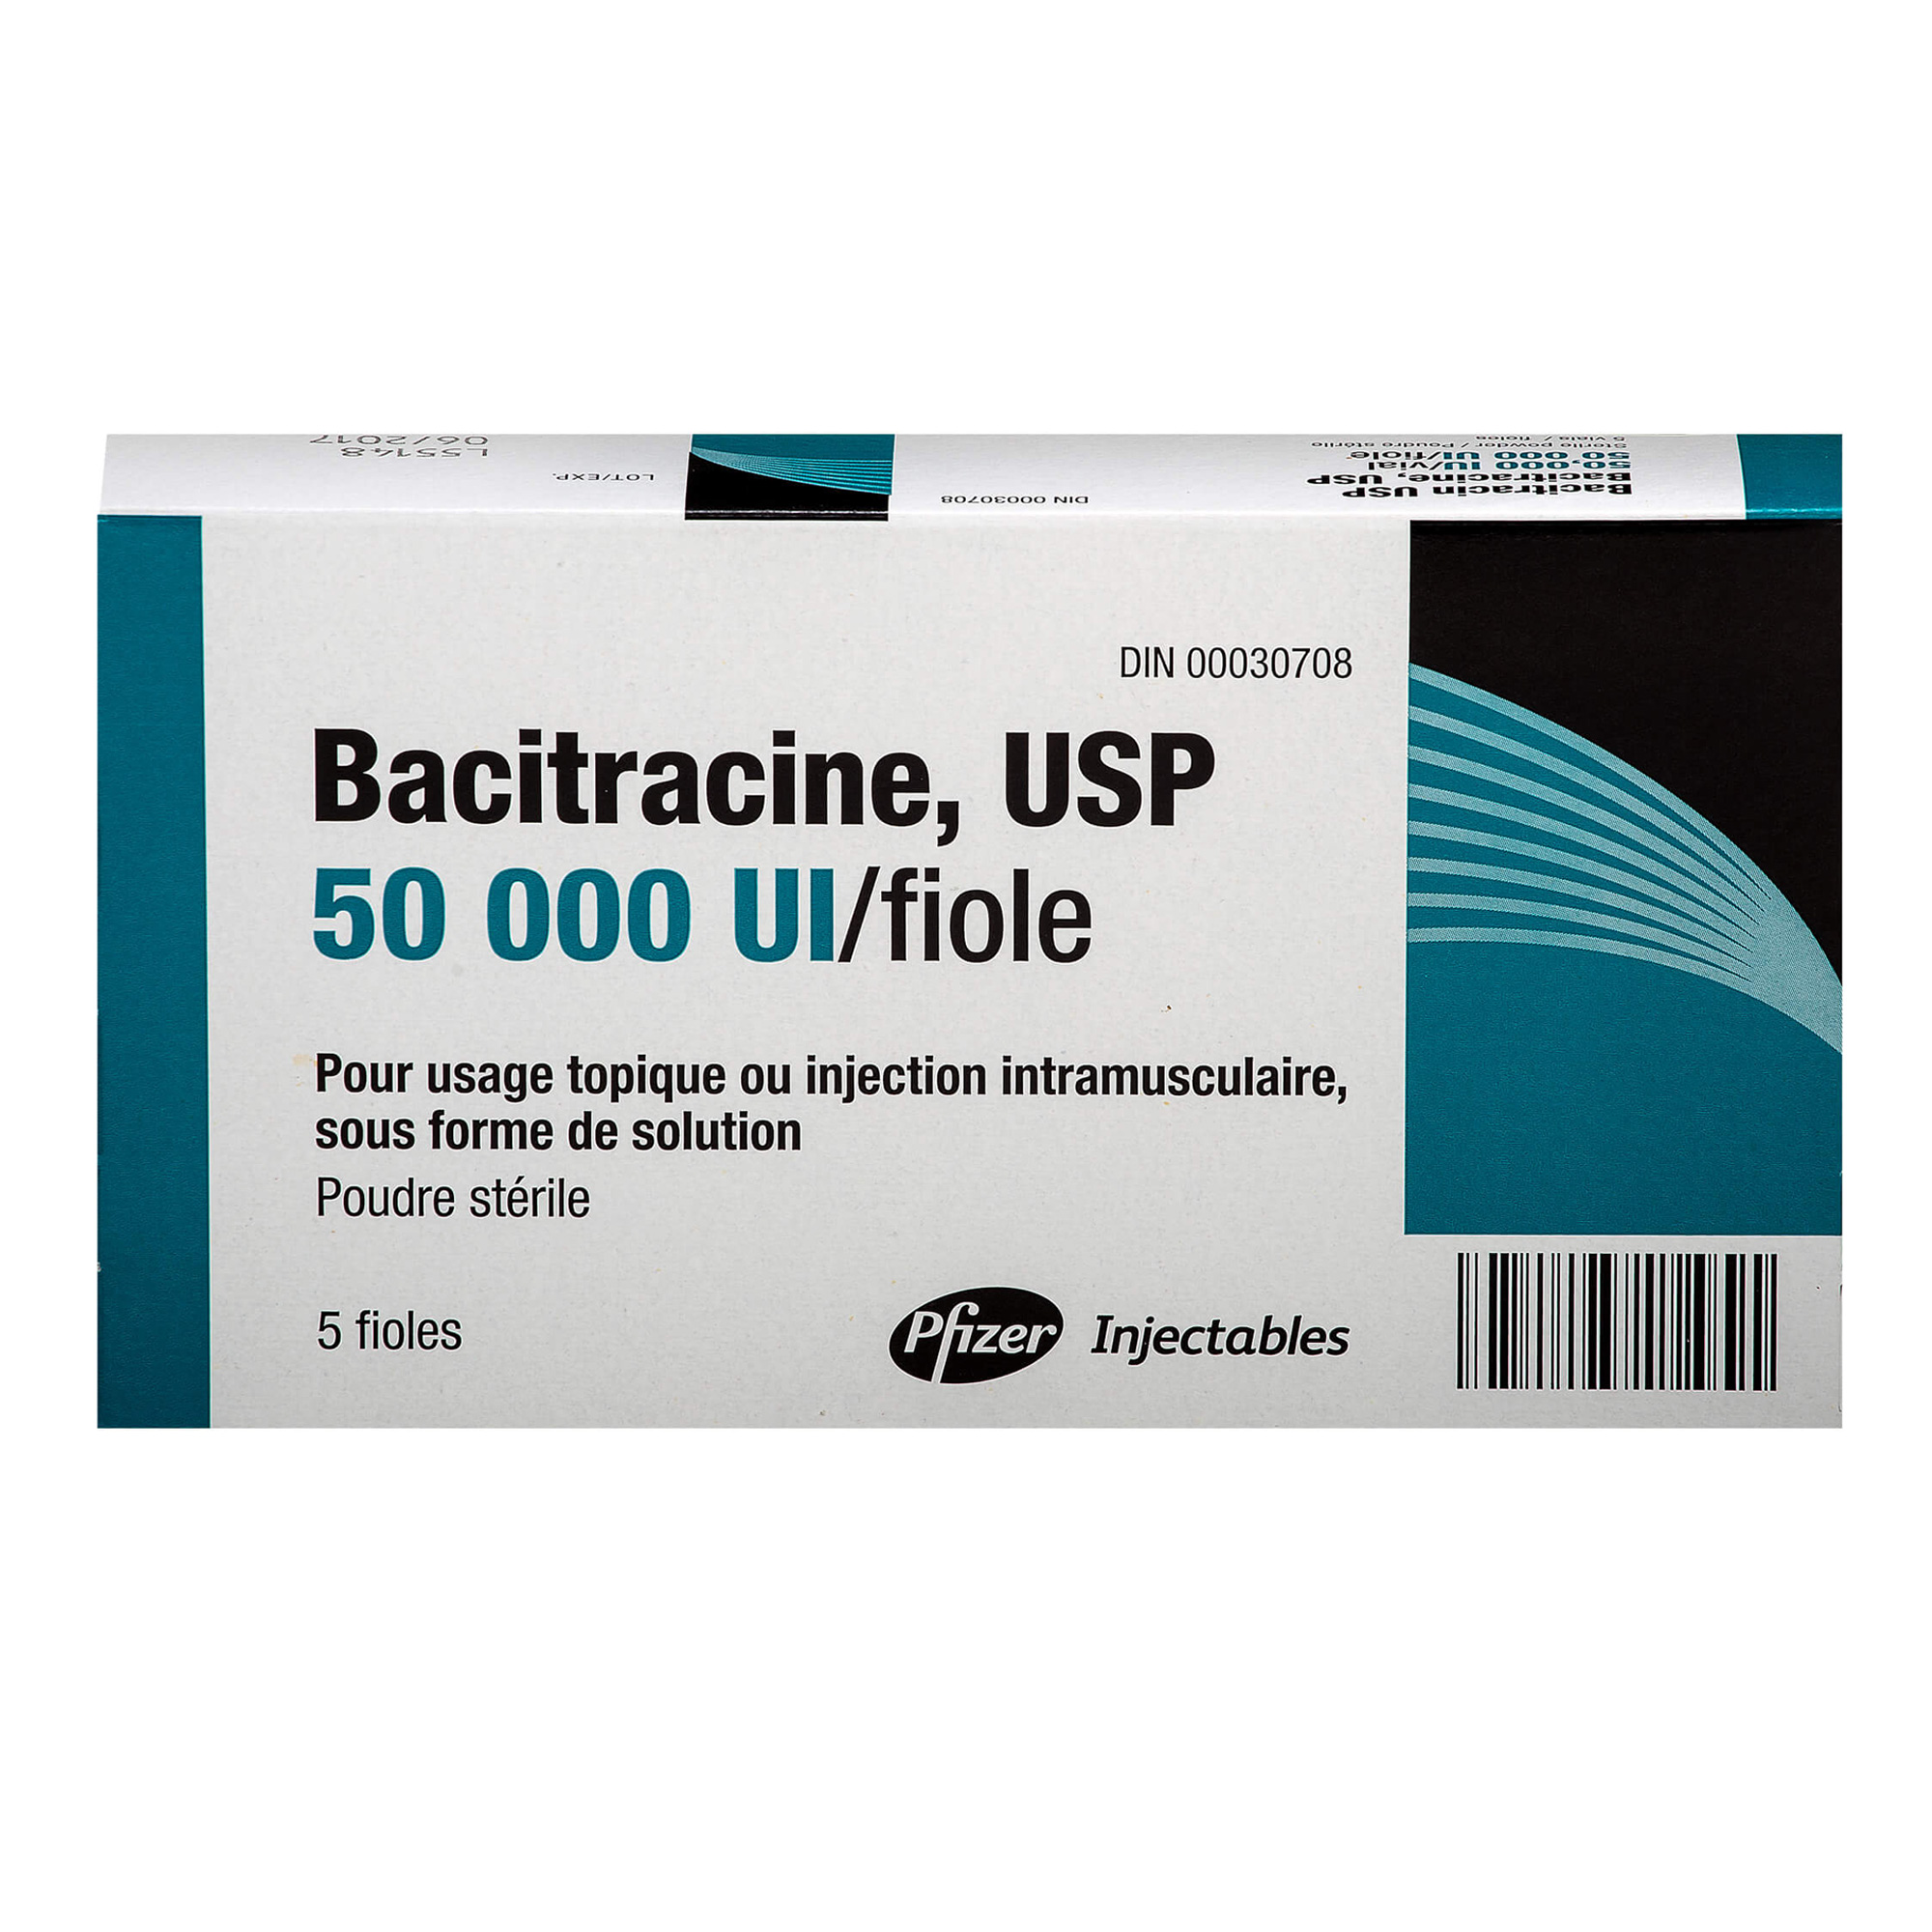 9680---Bacitracin---1a.jpg